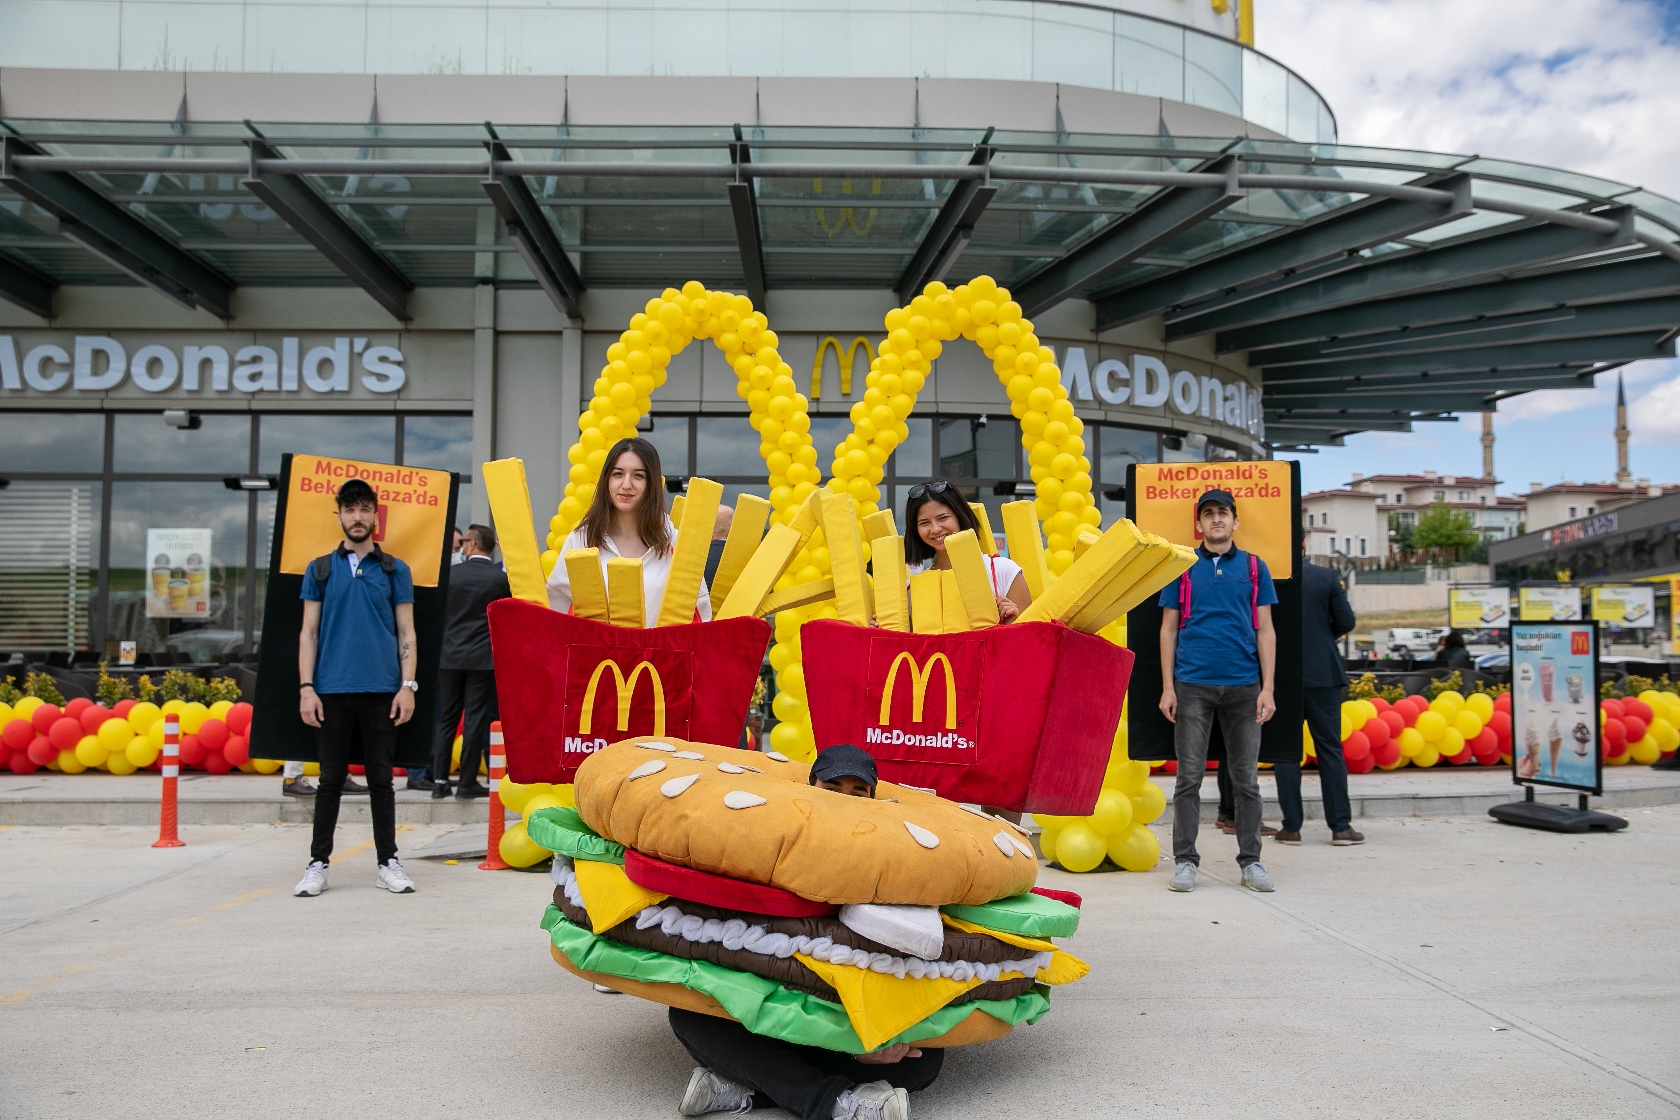 McDonald’s’ın başkentteki 23’üncü şubesi Beker Plaza’da açıldı